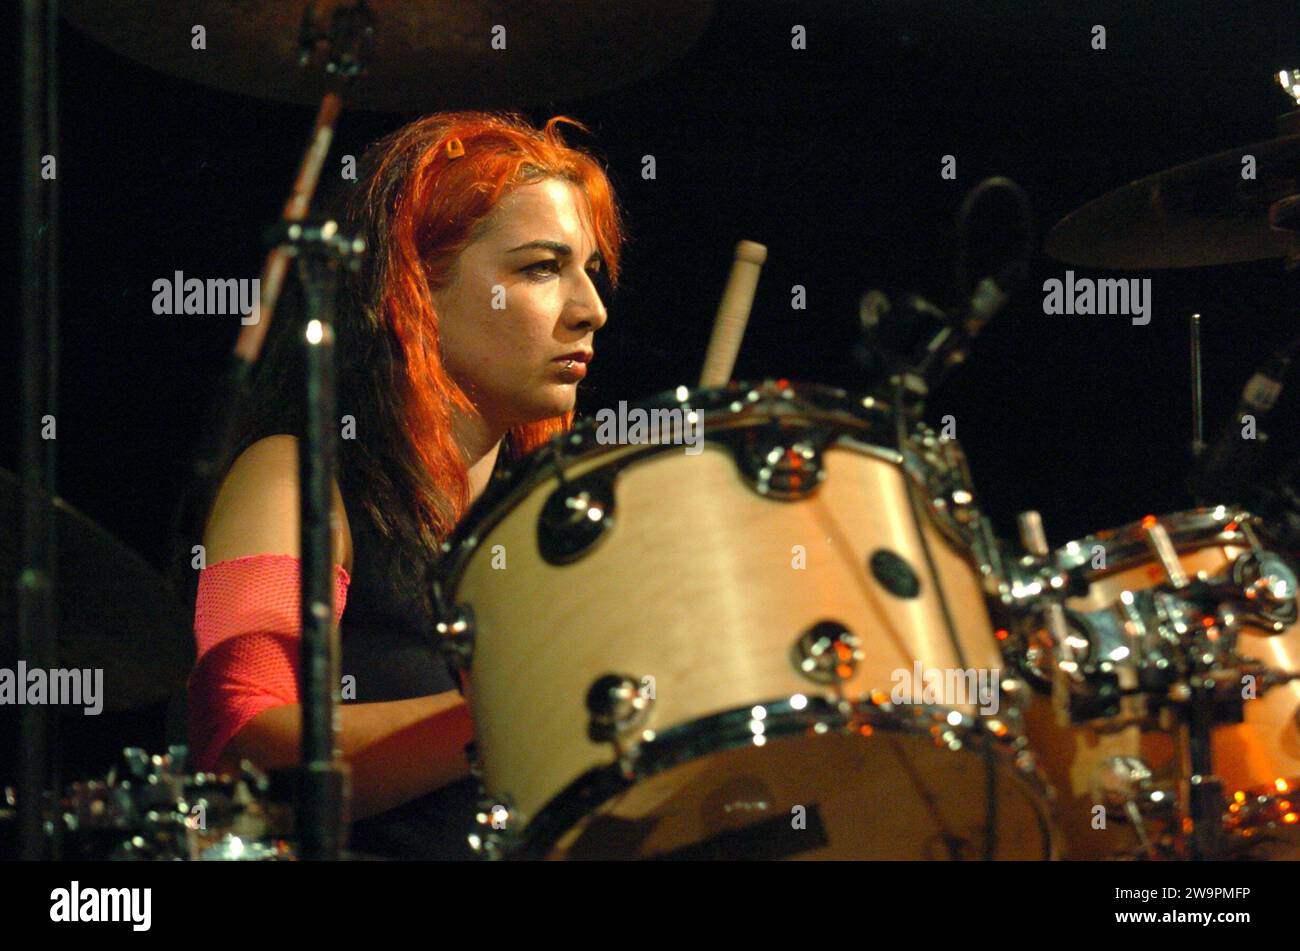 Milano Italia 2004-11-25 : Aika Ceccarelli batterista, delle bambole di pezza, gruppo musicale femminile pop punk italiano, durante il concerto dal vivo al Rolling Stone Foto Stock